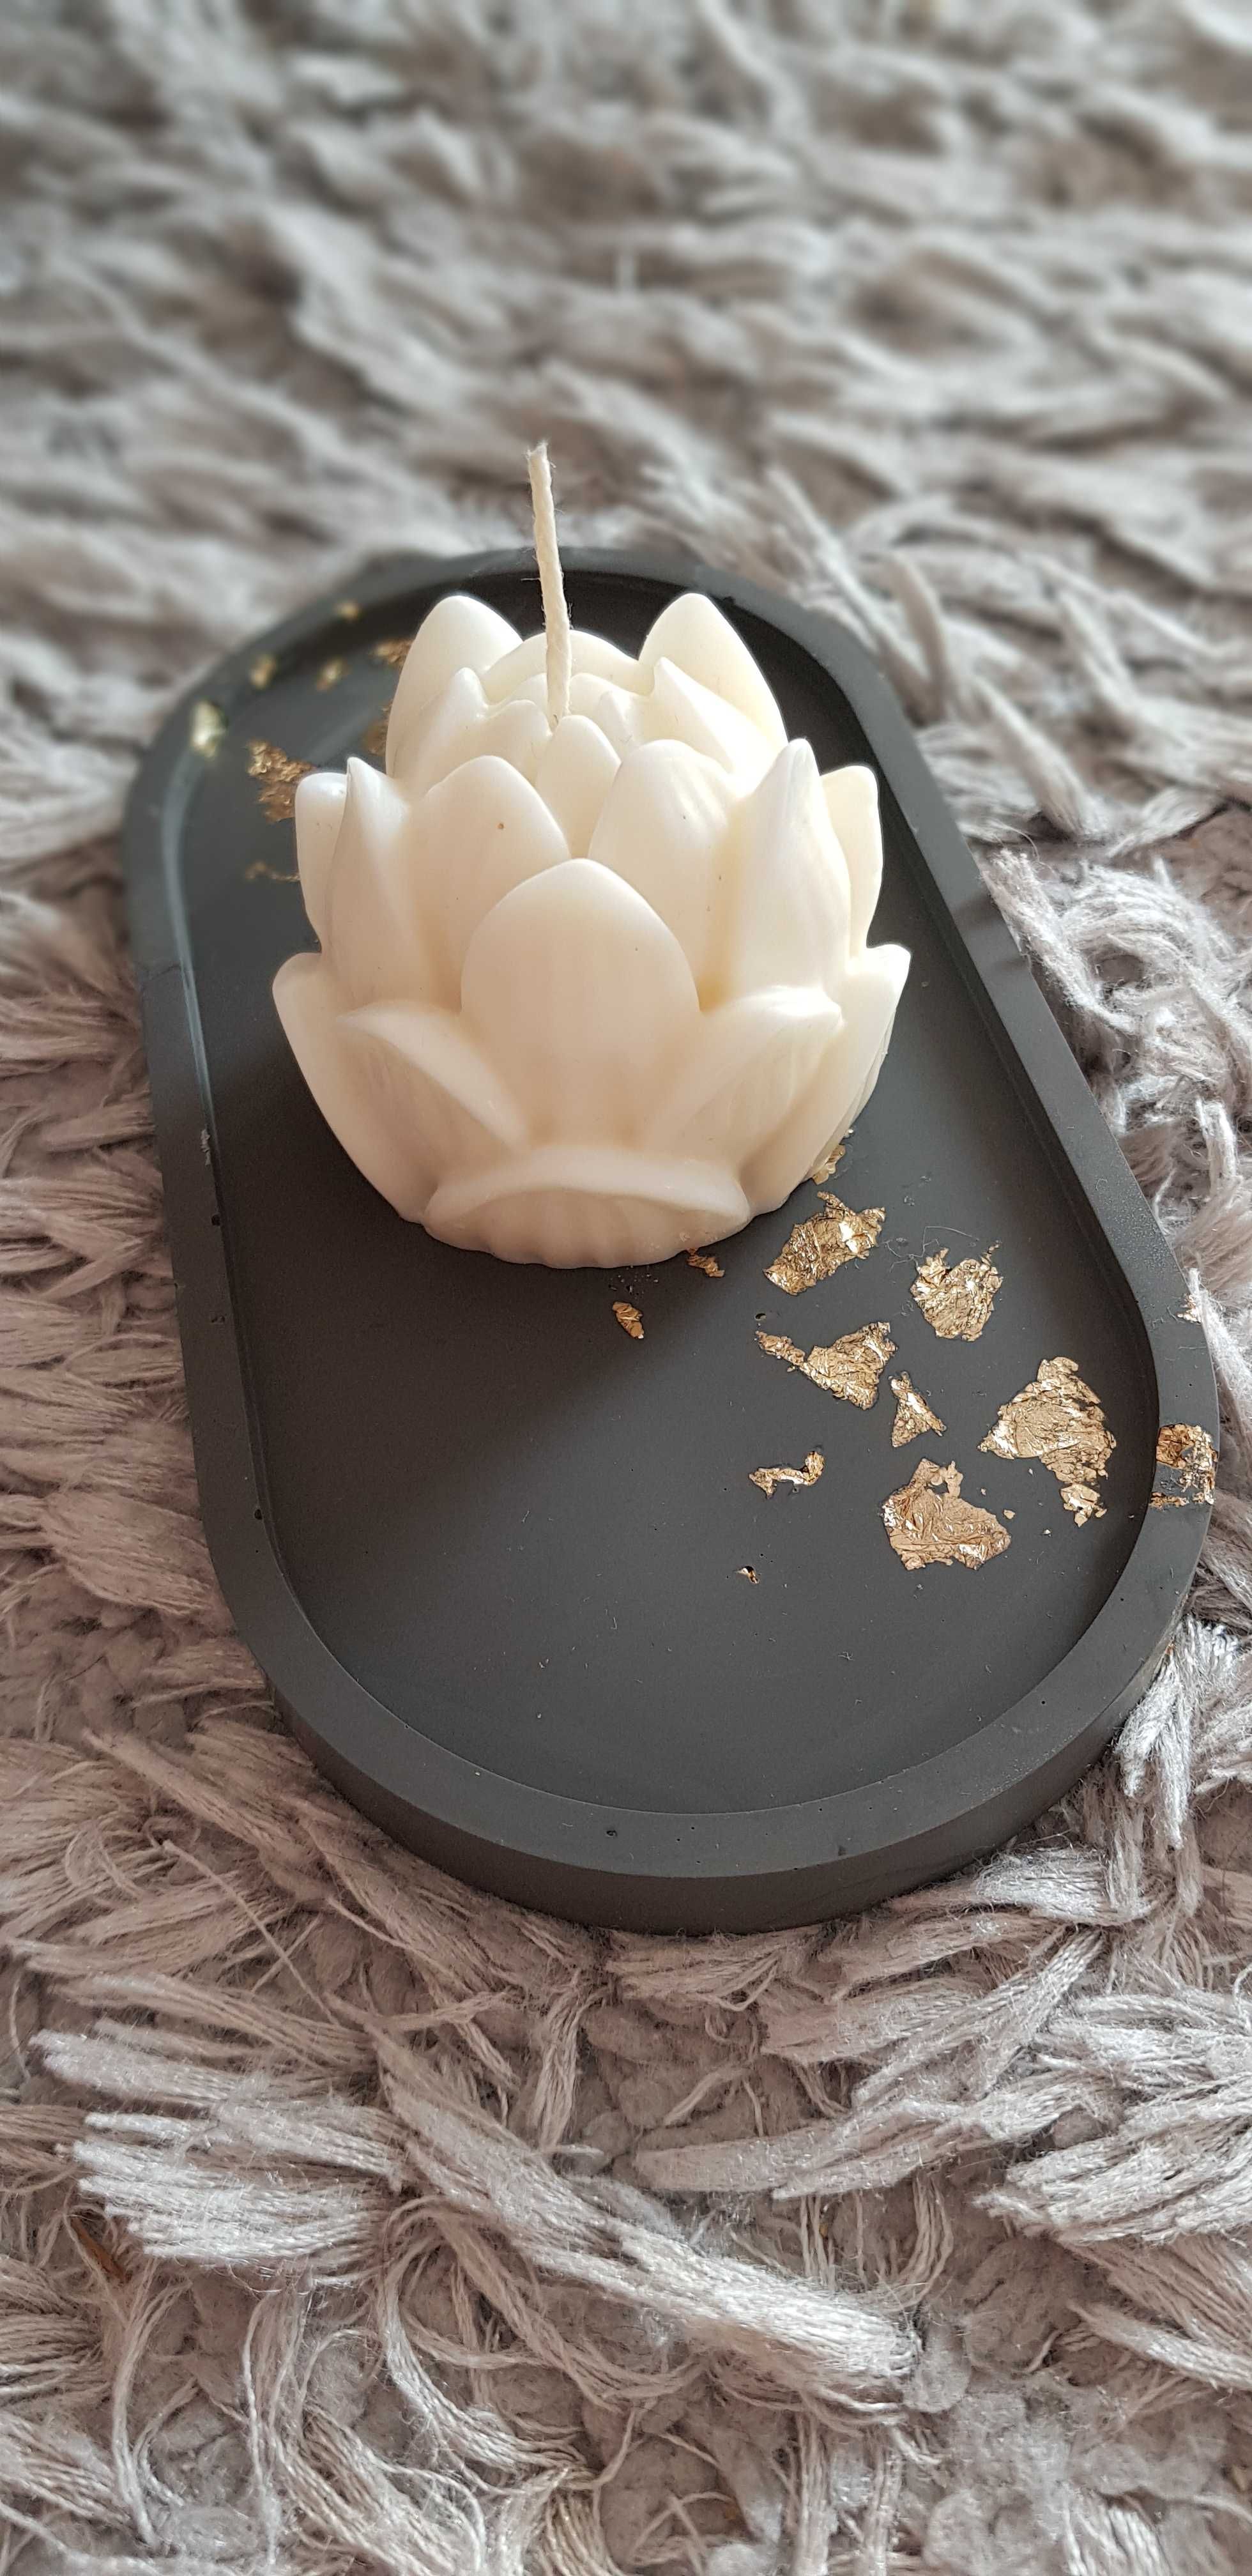 Świeczka sojowa bezzapachowa decoracijna kwiat lotosu